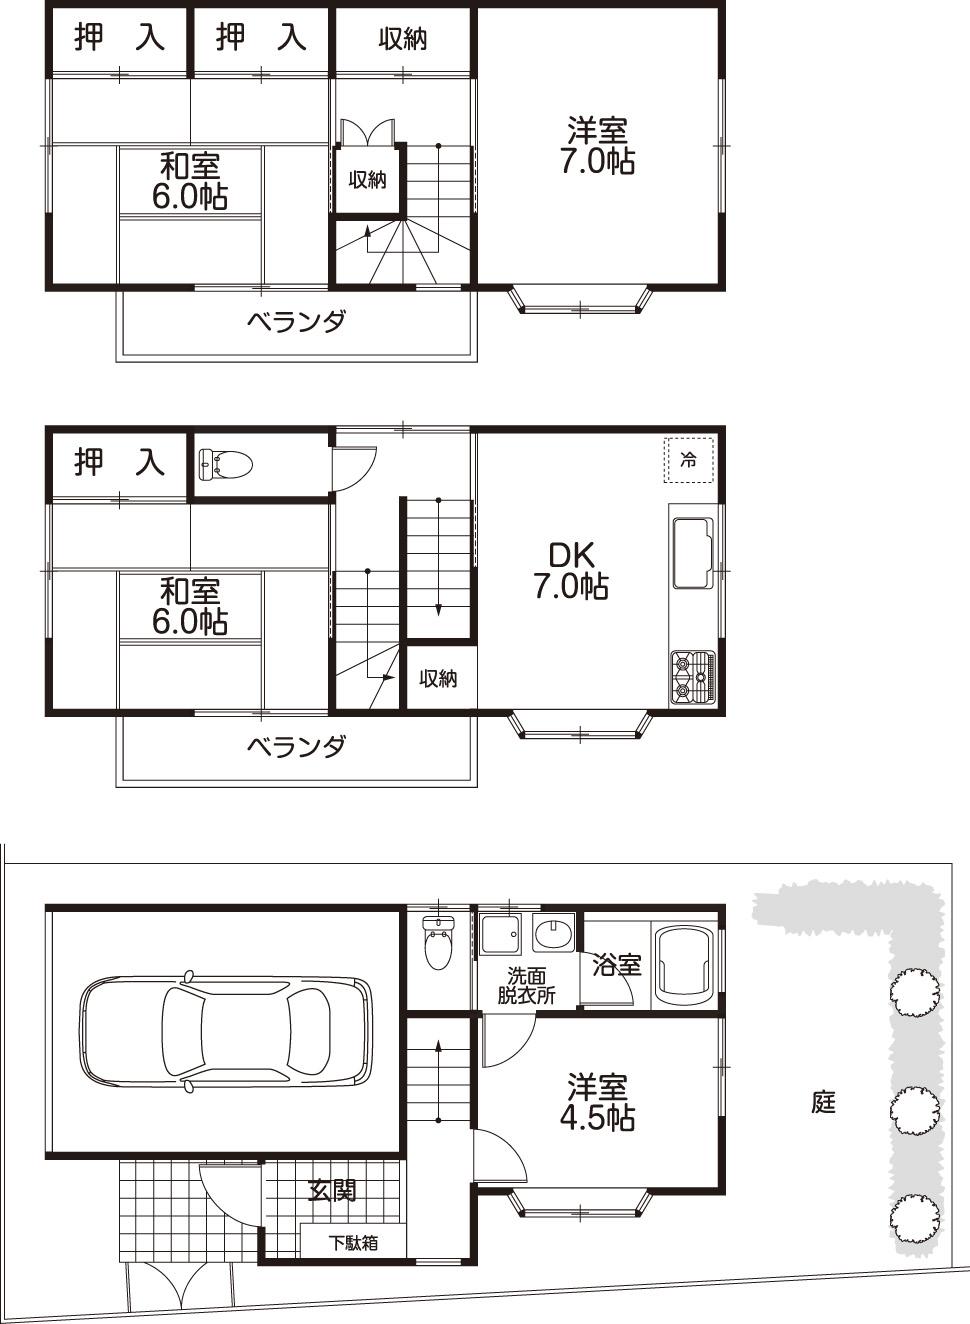 Floor plan. 21 million yen, 4DK, Land area 60.23 sq m , Building area 97.76 sq m